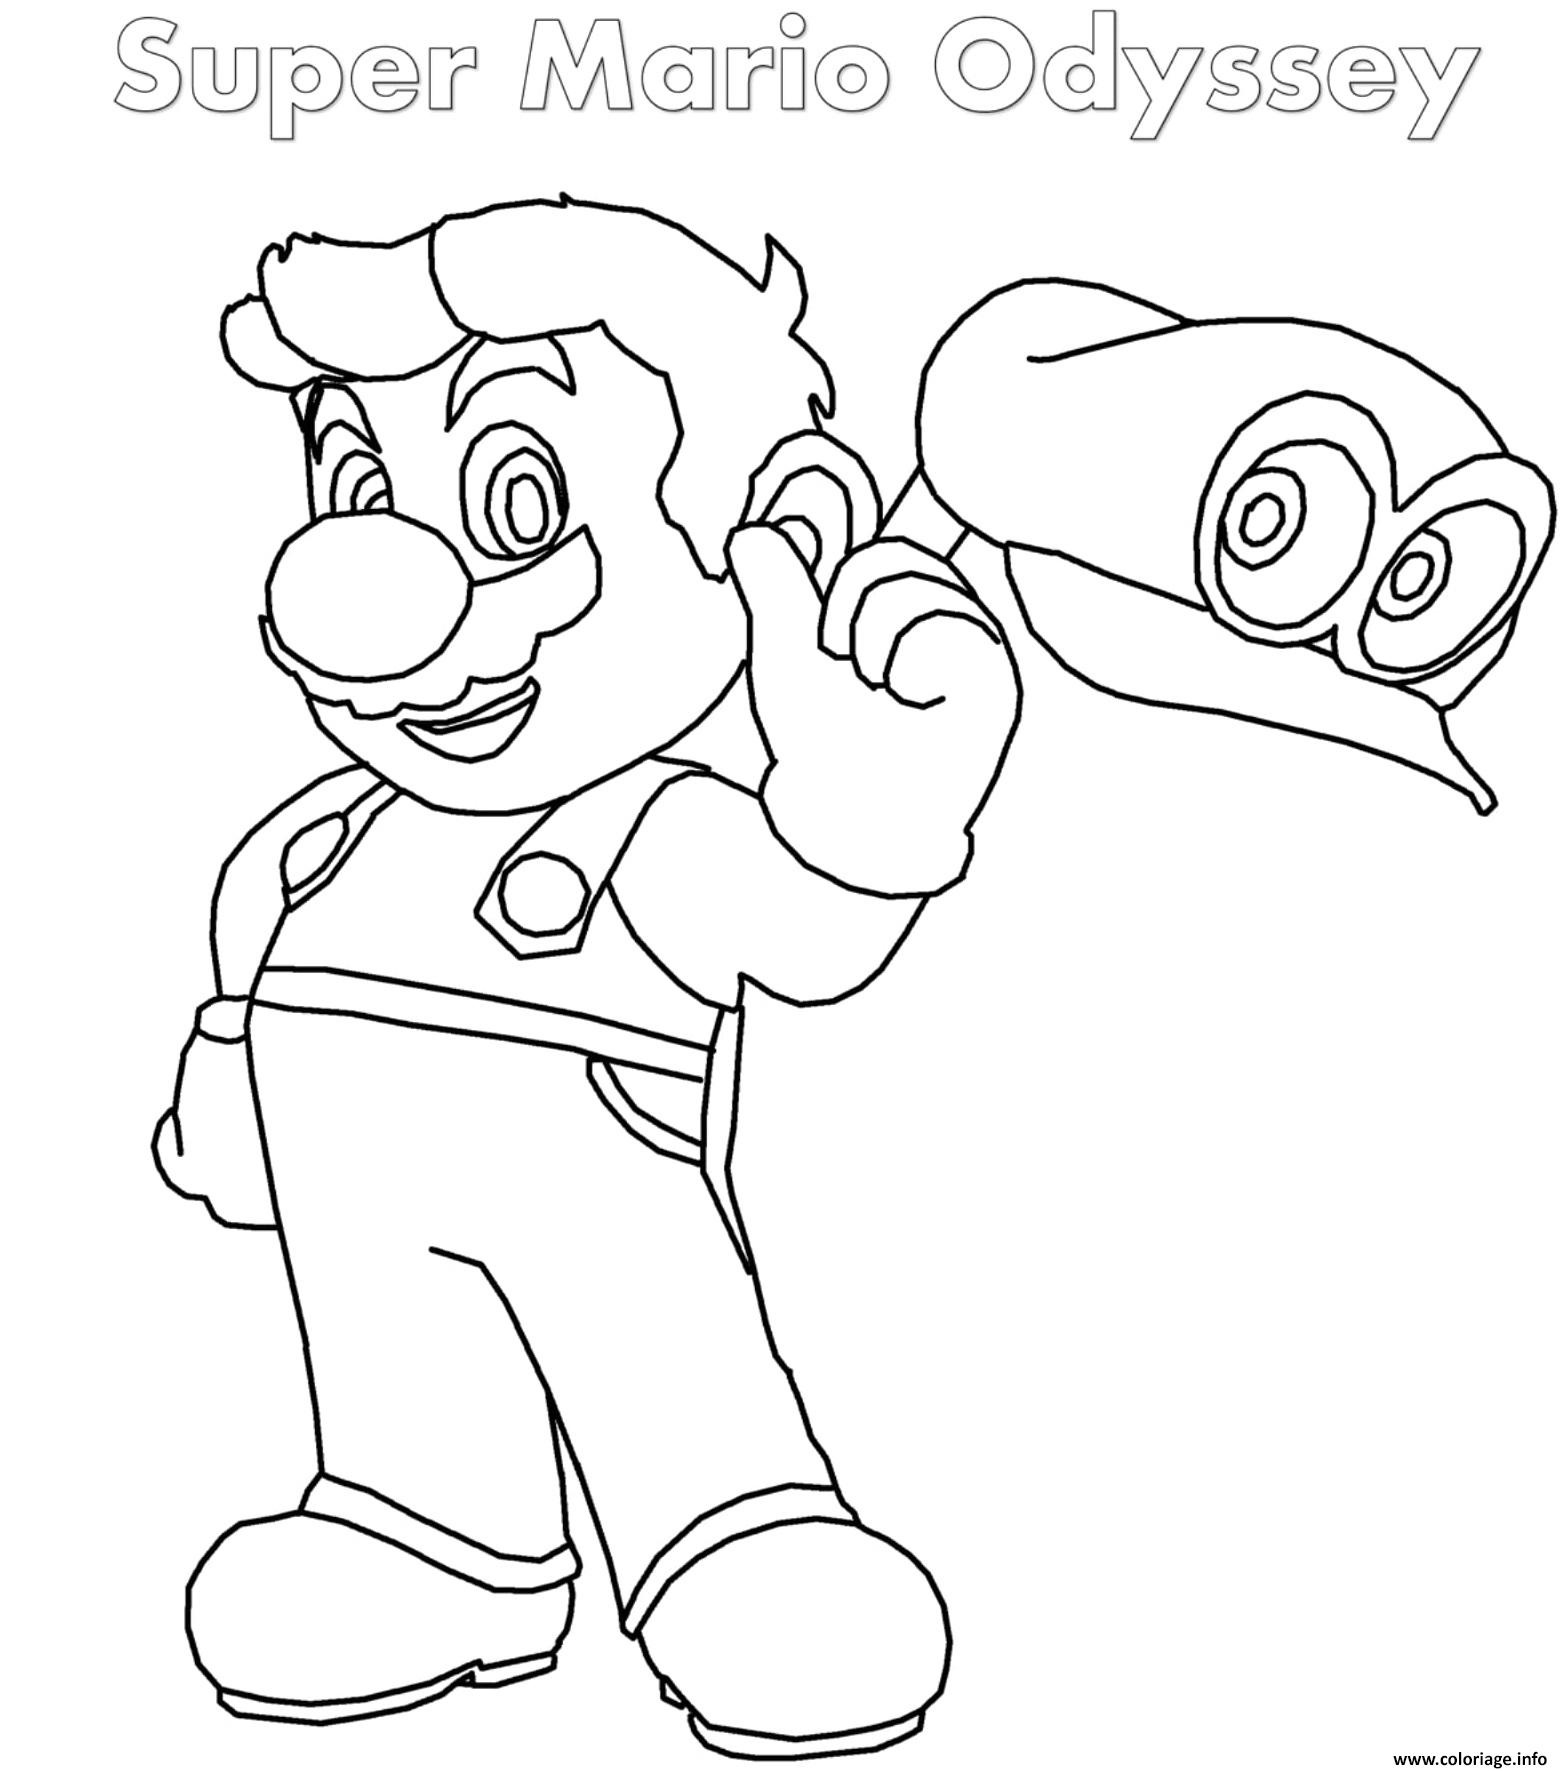 Coloriage Mario Odyssey A Imprimer Génial Coloriage Super Mario Odyssey Jecolorie